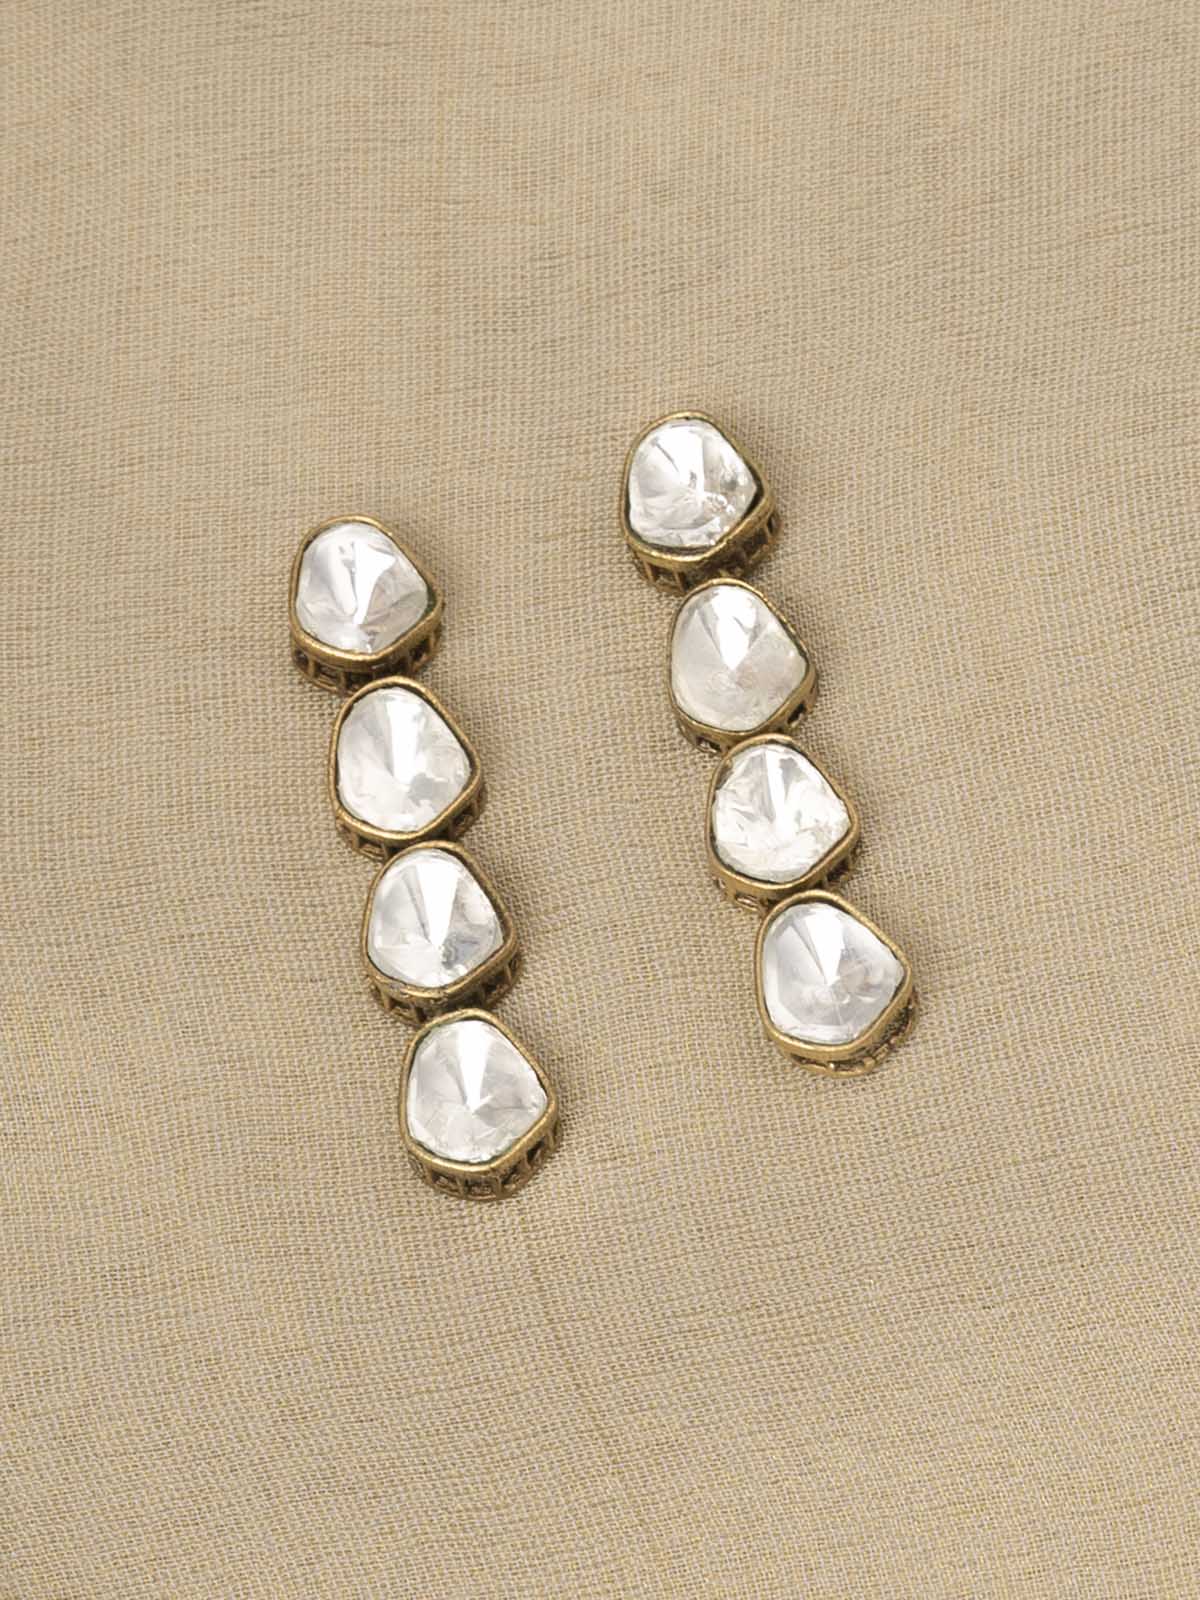 PK-S115 - White Color Faux Diamond Short Necklace Set